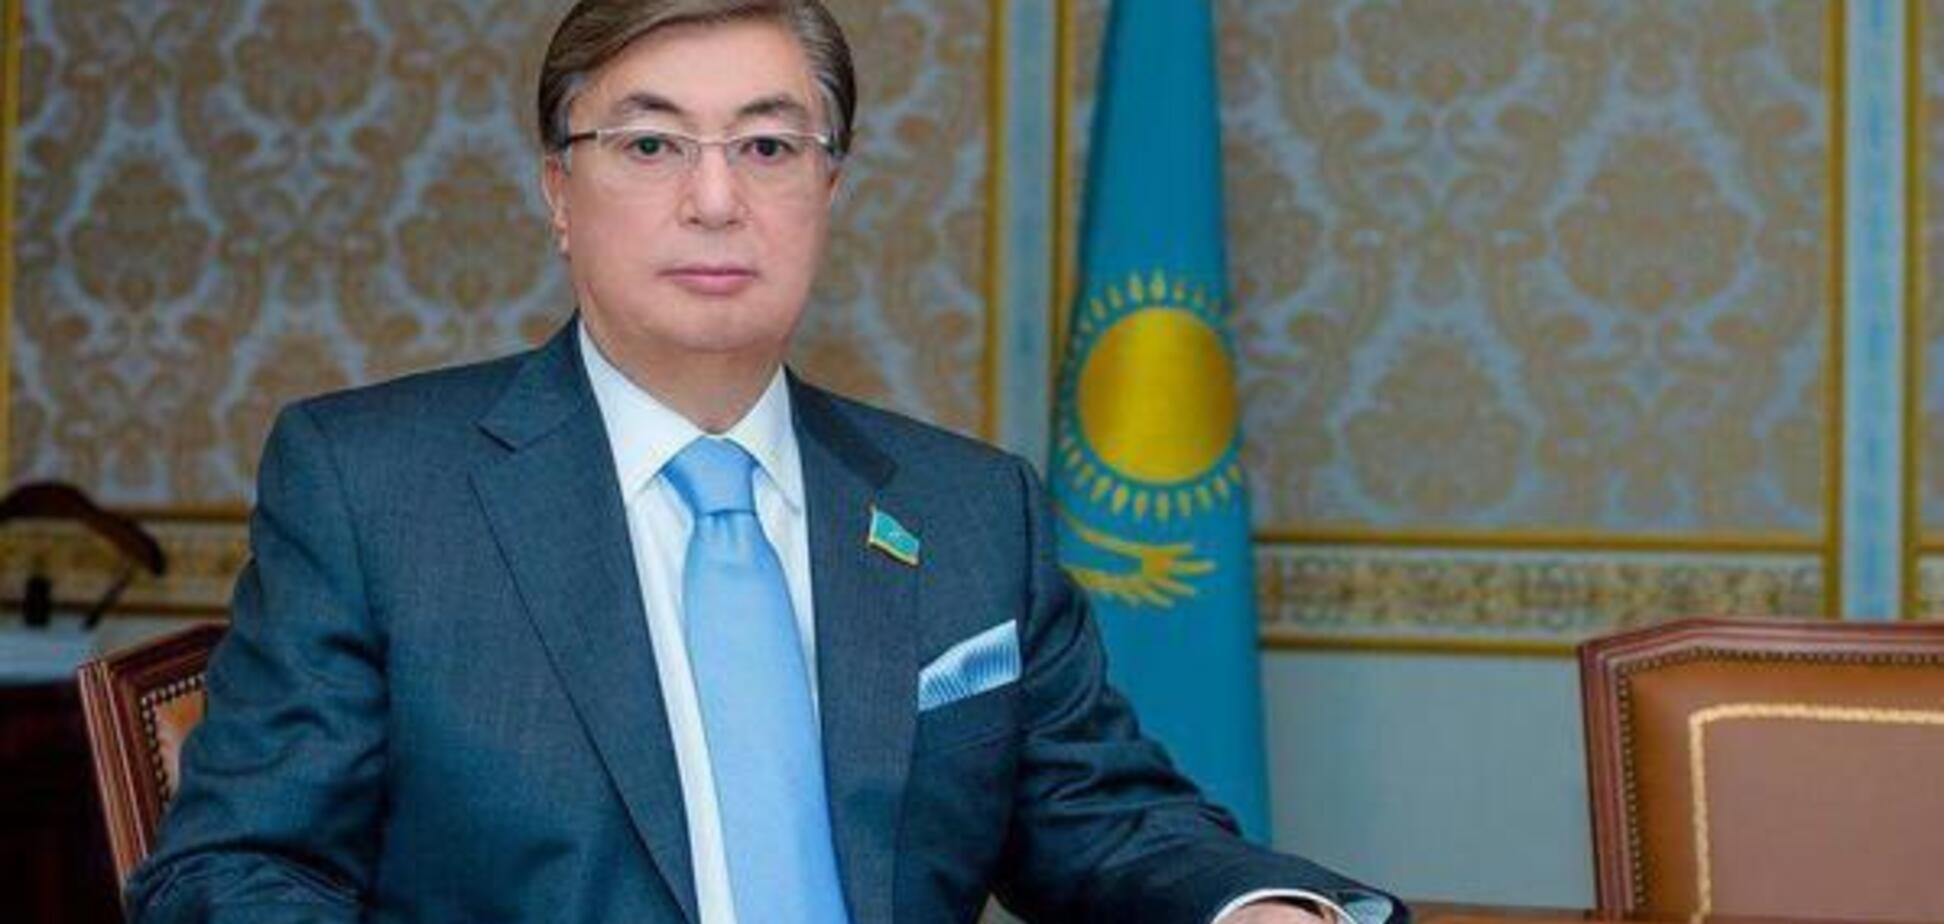 Токаєв склав присягу і запропонував перейменувати столицю Казахстану